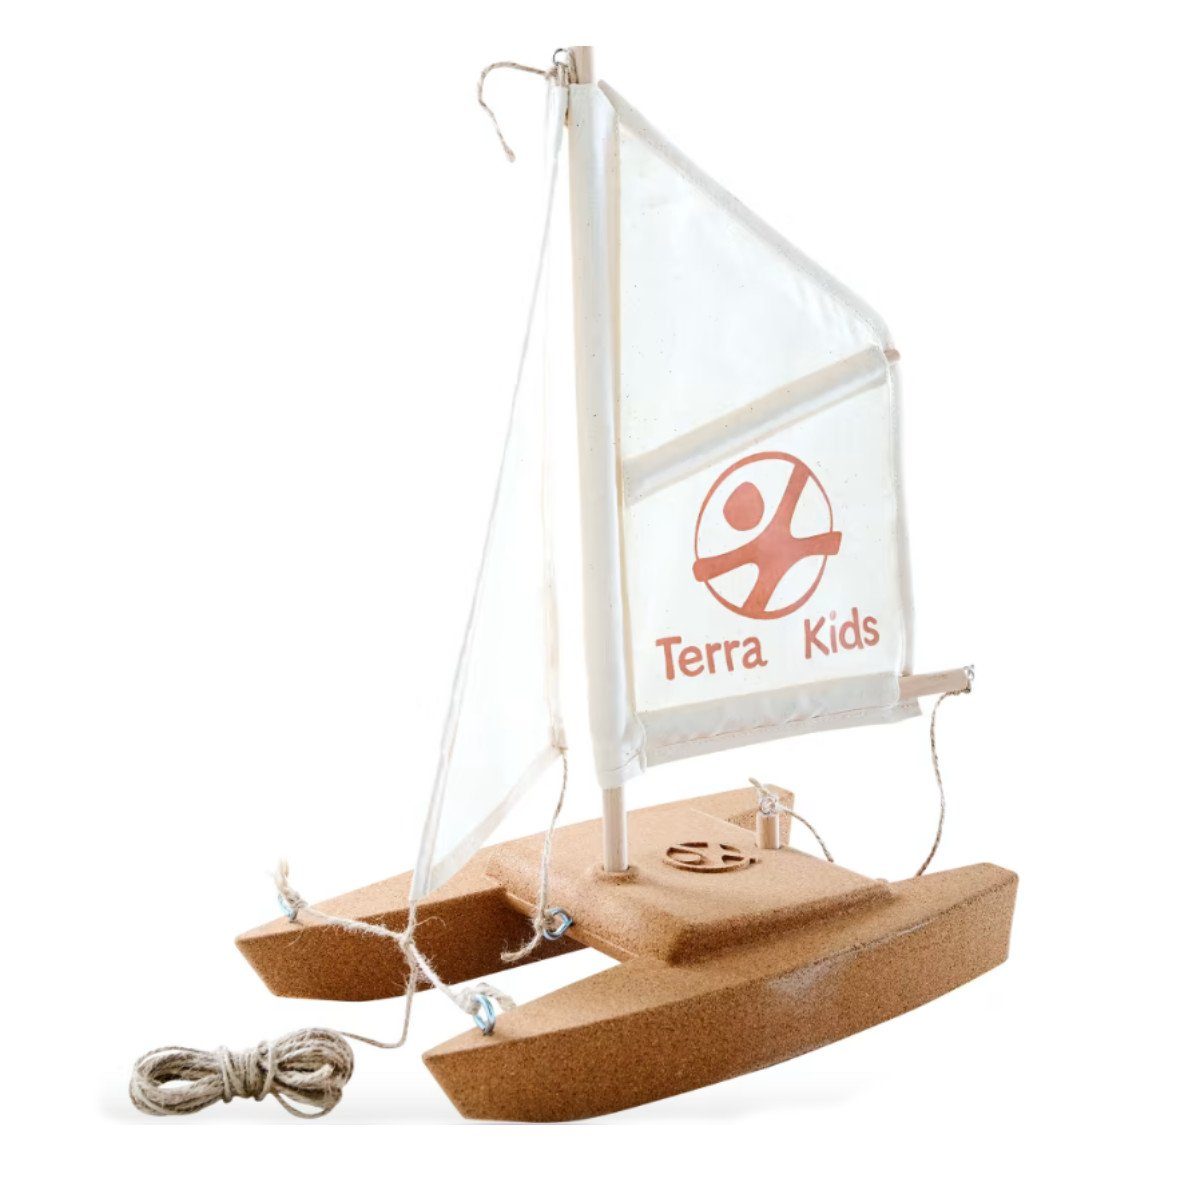 Haba Spielzeug-Schiff Korkkatamaran-Bausatz Terra Kids